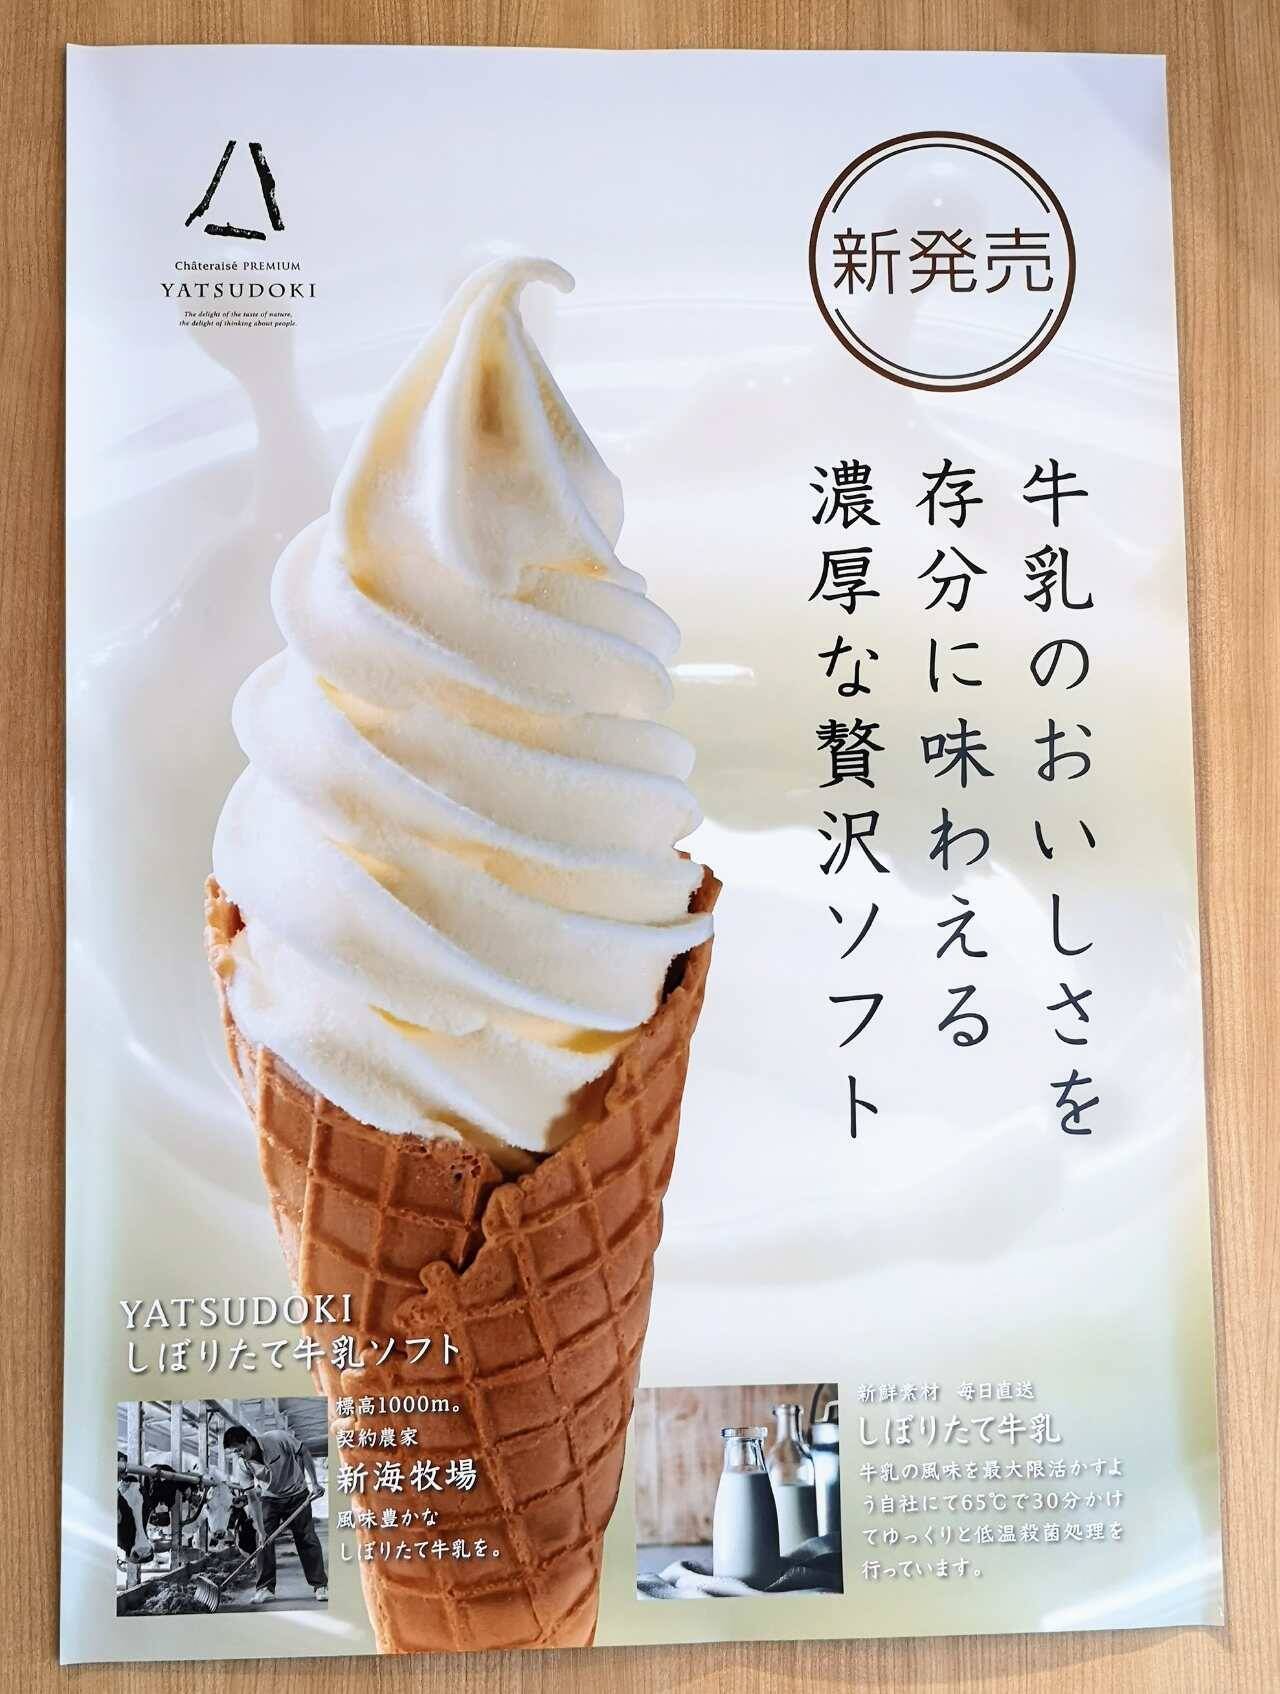 シャトレーゼ Yatsudoki 今度の主役は八ヶ岳のしぼりたて牛乳 ソフトクリームとカップジェラートが新発売 22年6月21日 エキサイトニュース